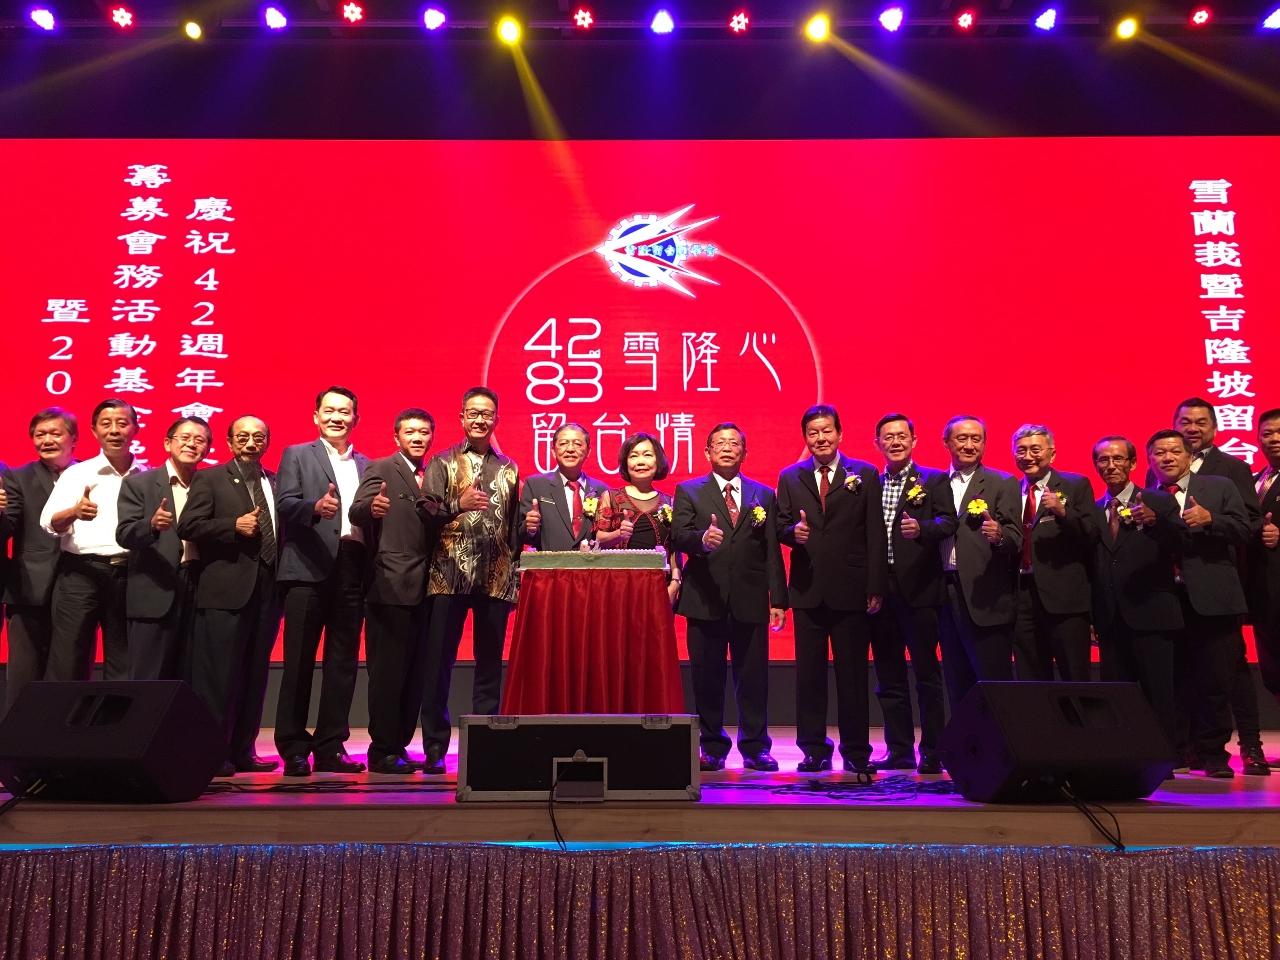 Wakil Anne Hung (kiri kesembilan) menghadiri ulang tahun ke-42 yang dihoskan oleh Persatuan Alumni Taiwan, Selangor Dan Wilayah Persekutuan Malaysia mengambil gambar dengan peserta .